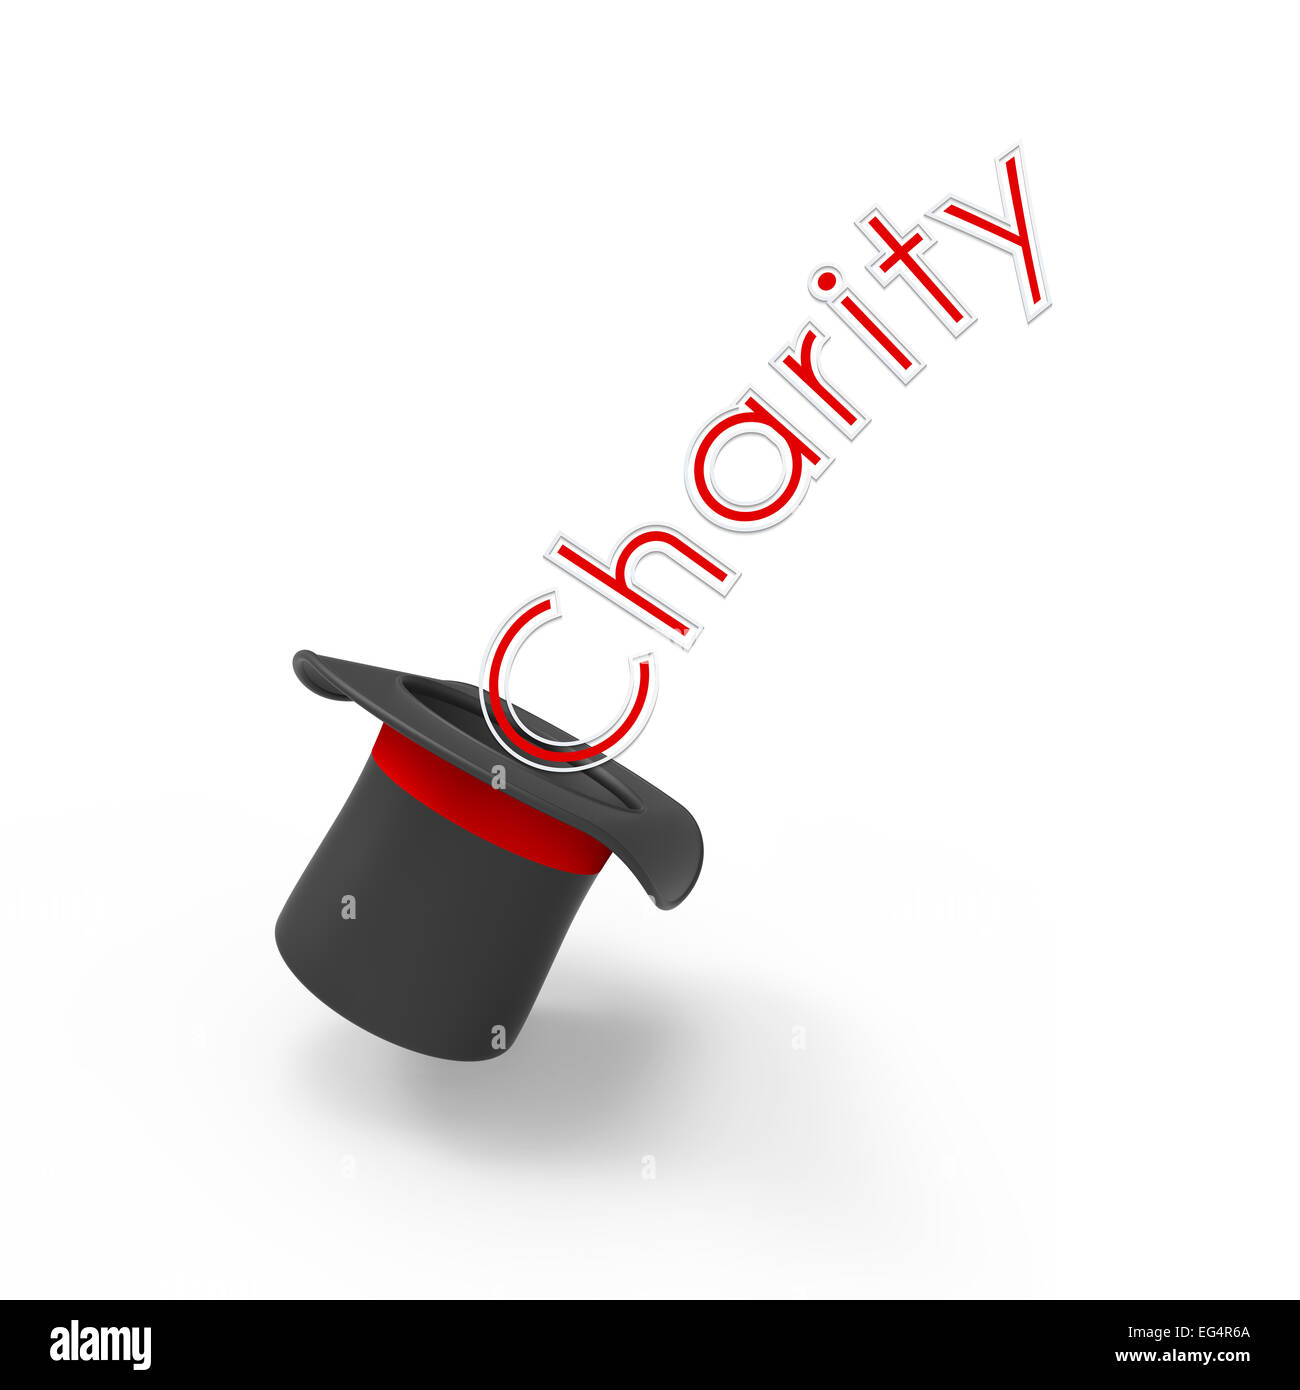 Dreidimensionale Illusionist Zylinderhut auf weißem Hintergrund mit Pop-up-Beschriftung "Charity". Konzept der Kampagne, Institution, org Stockfoto